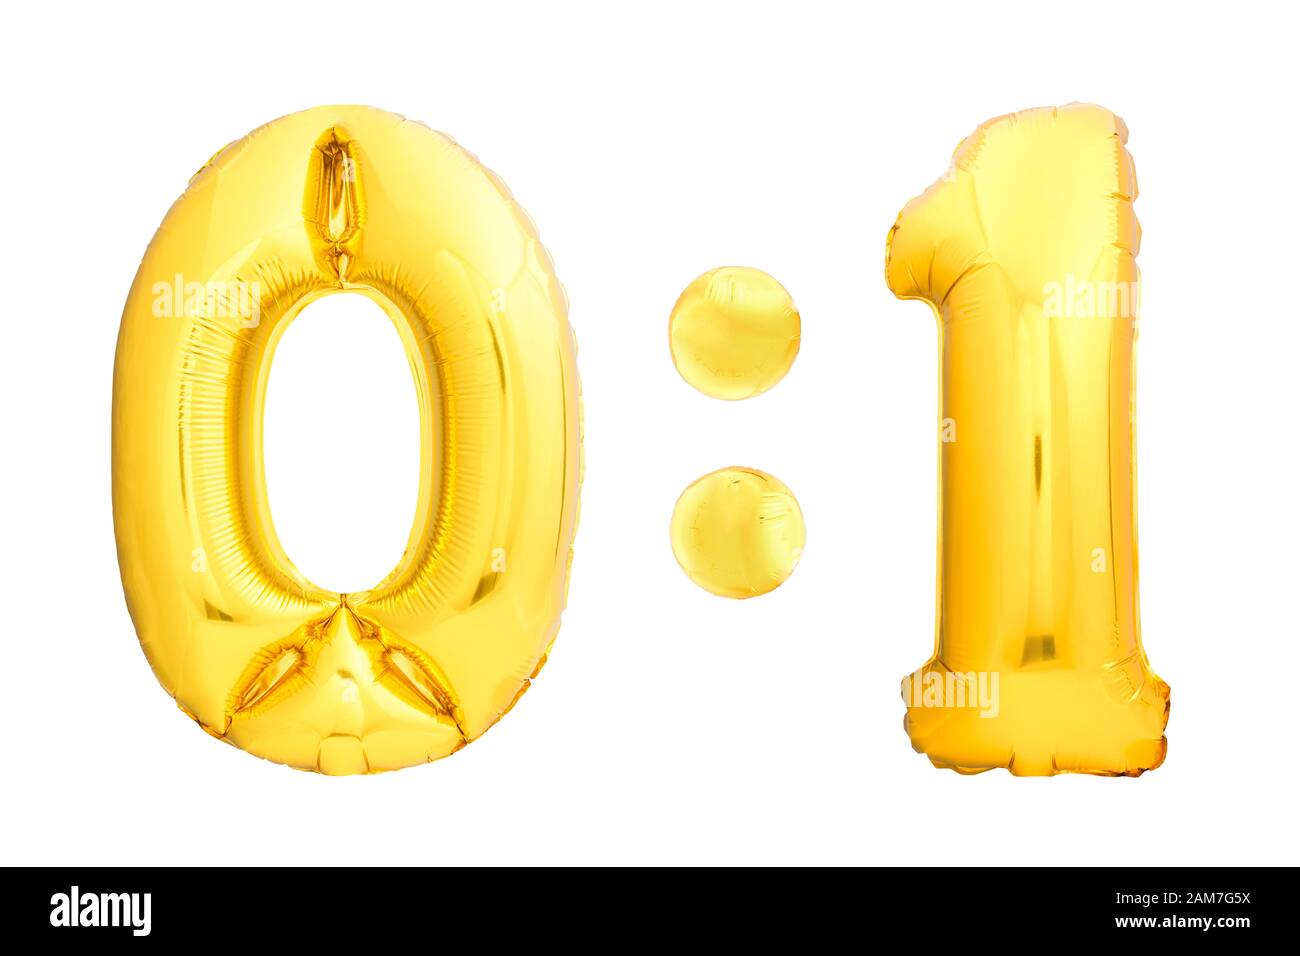 Score de football ou de hockey 0:1 chiffres zéro zéro et un fait de ballons gonflables dorés isolés sur fond blanc. Tableau de bord de la compétition pour enfants Banque D'Images